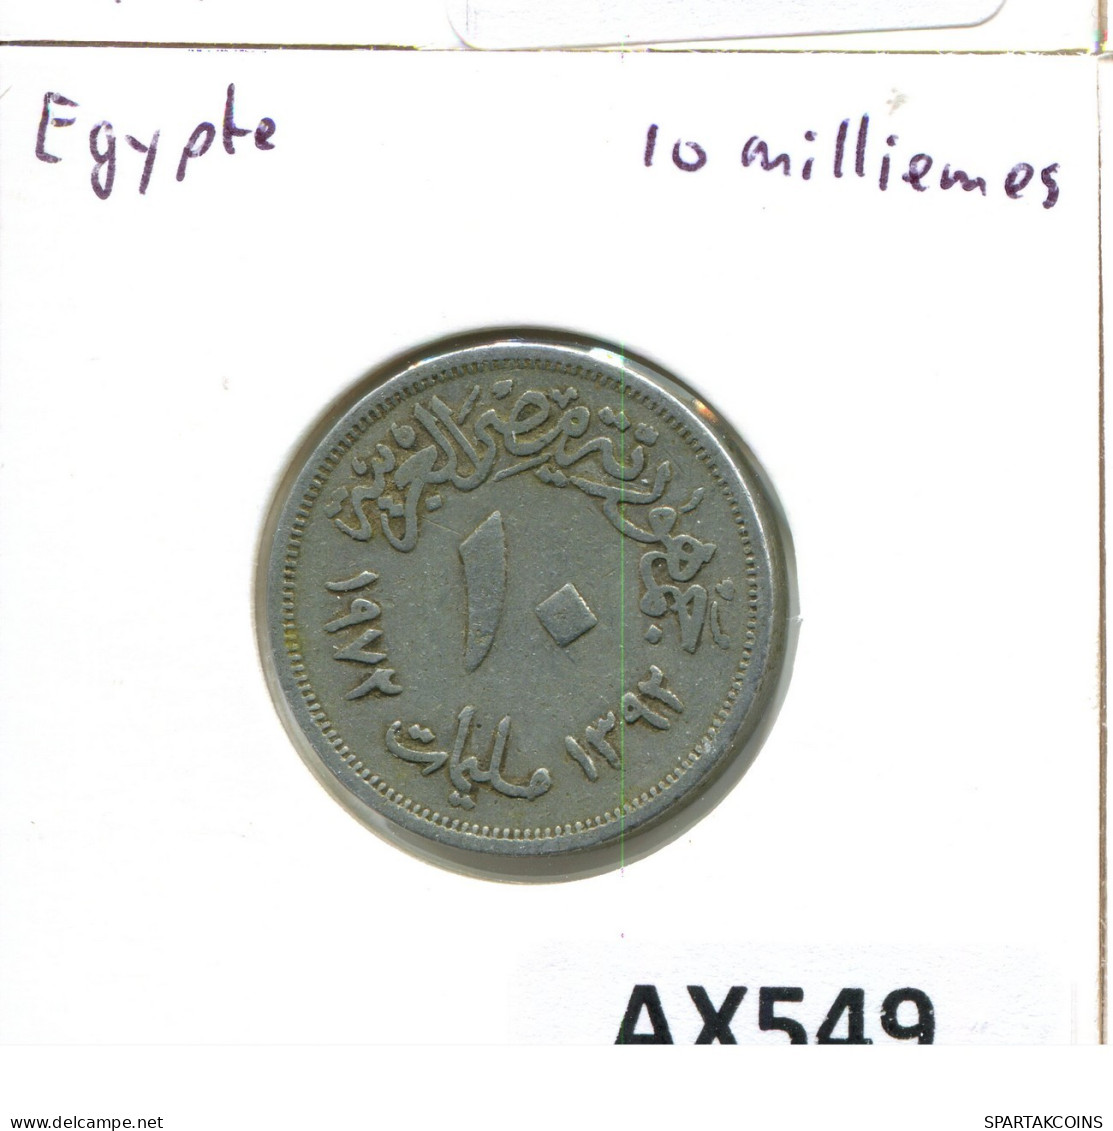 10 MILLIEMES 1976 EGIPTO EGYPT Islámico Moneda #AX549.E.A - Aegypten